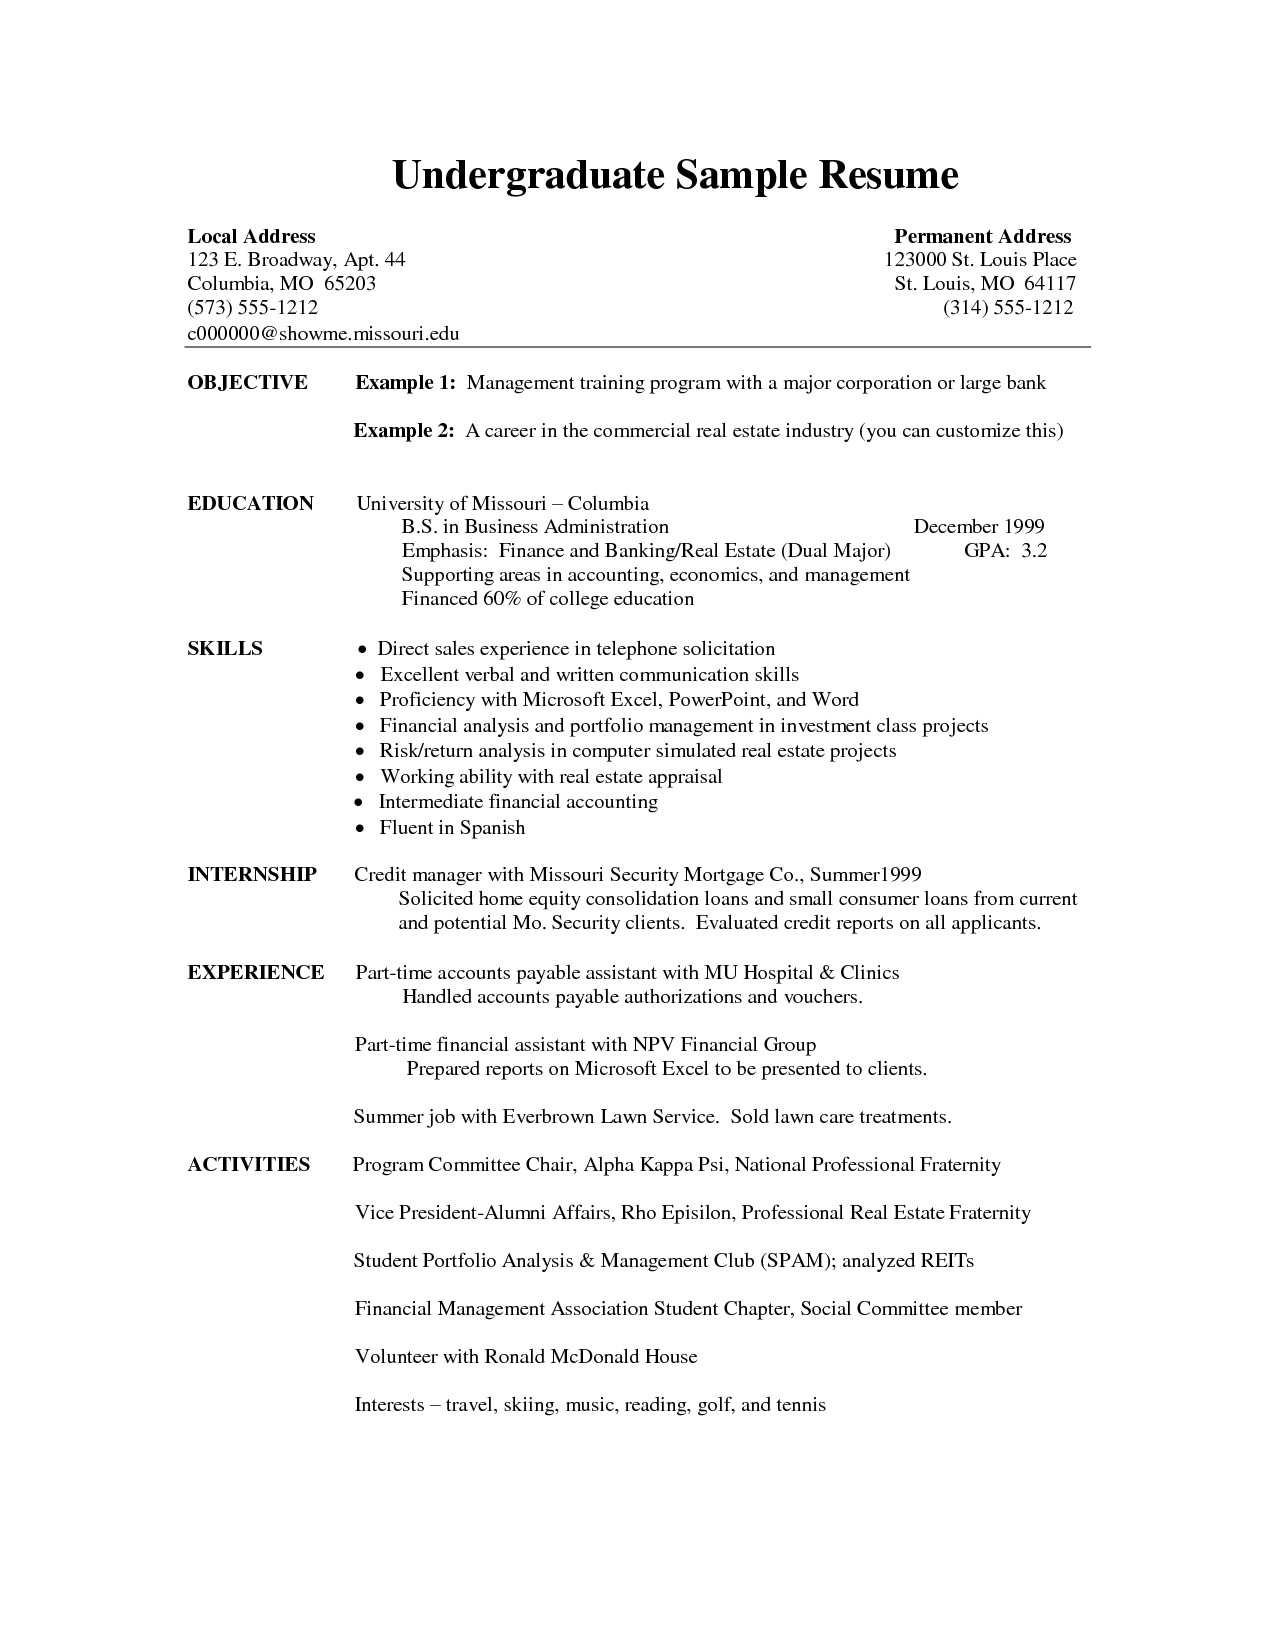 resume templates undergraduate